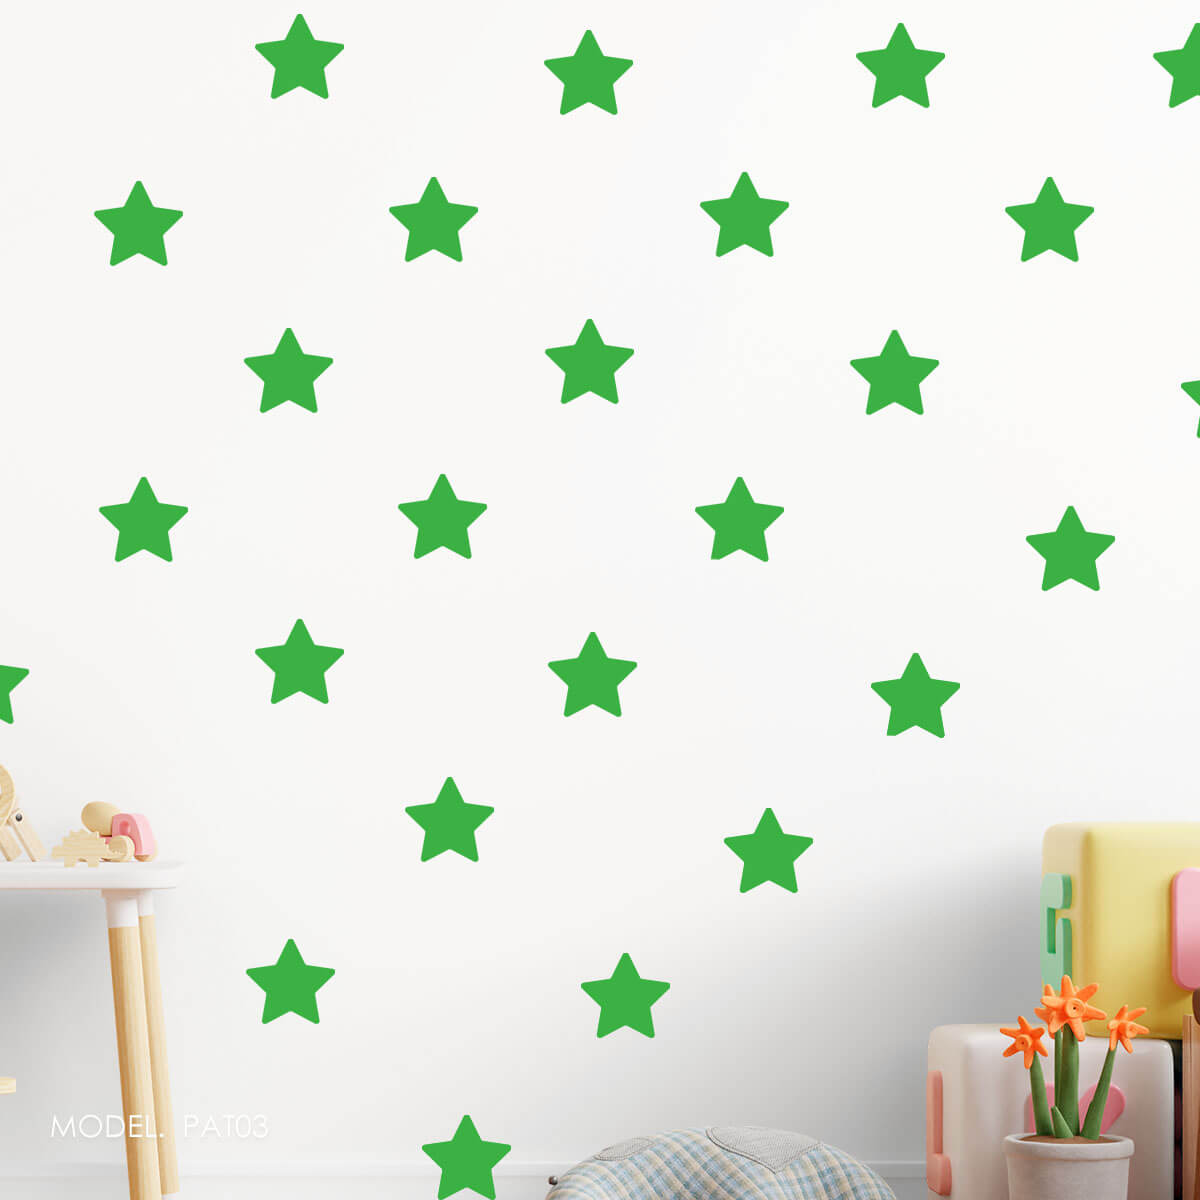 PAT04- Patrón Estrellas Verdes ¡Escoge tu tonalidad de verde favorita!